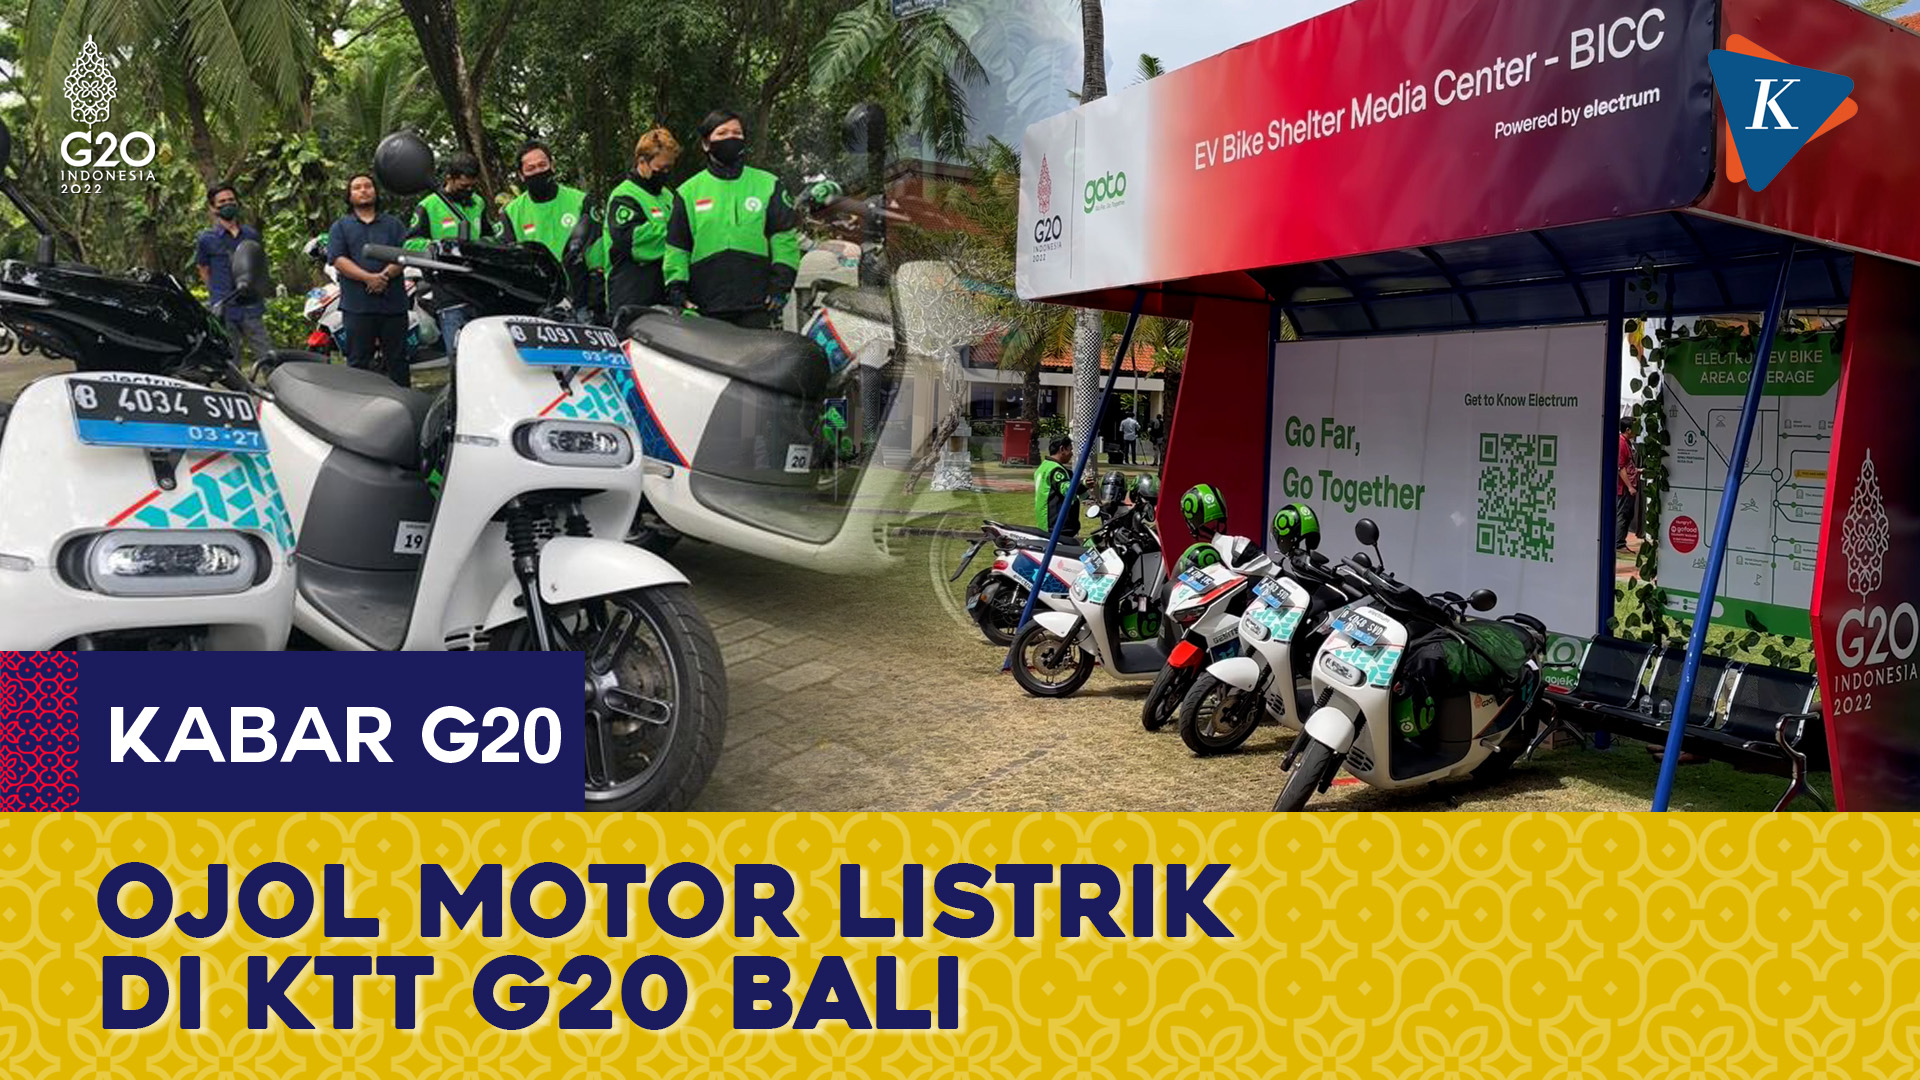 Ojol Motor Listrik Gratis Ramaikan KTT G20 Bali, Siap Antar Jemput Delegasi